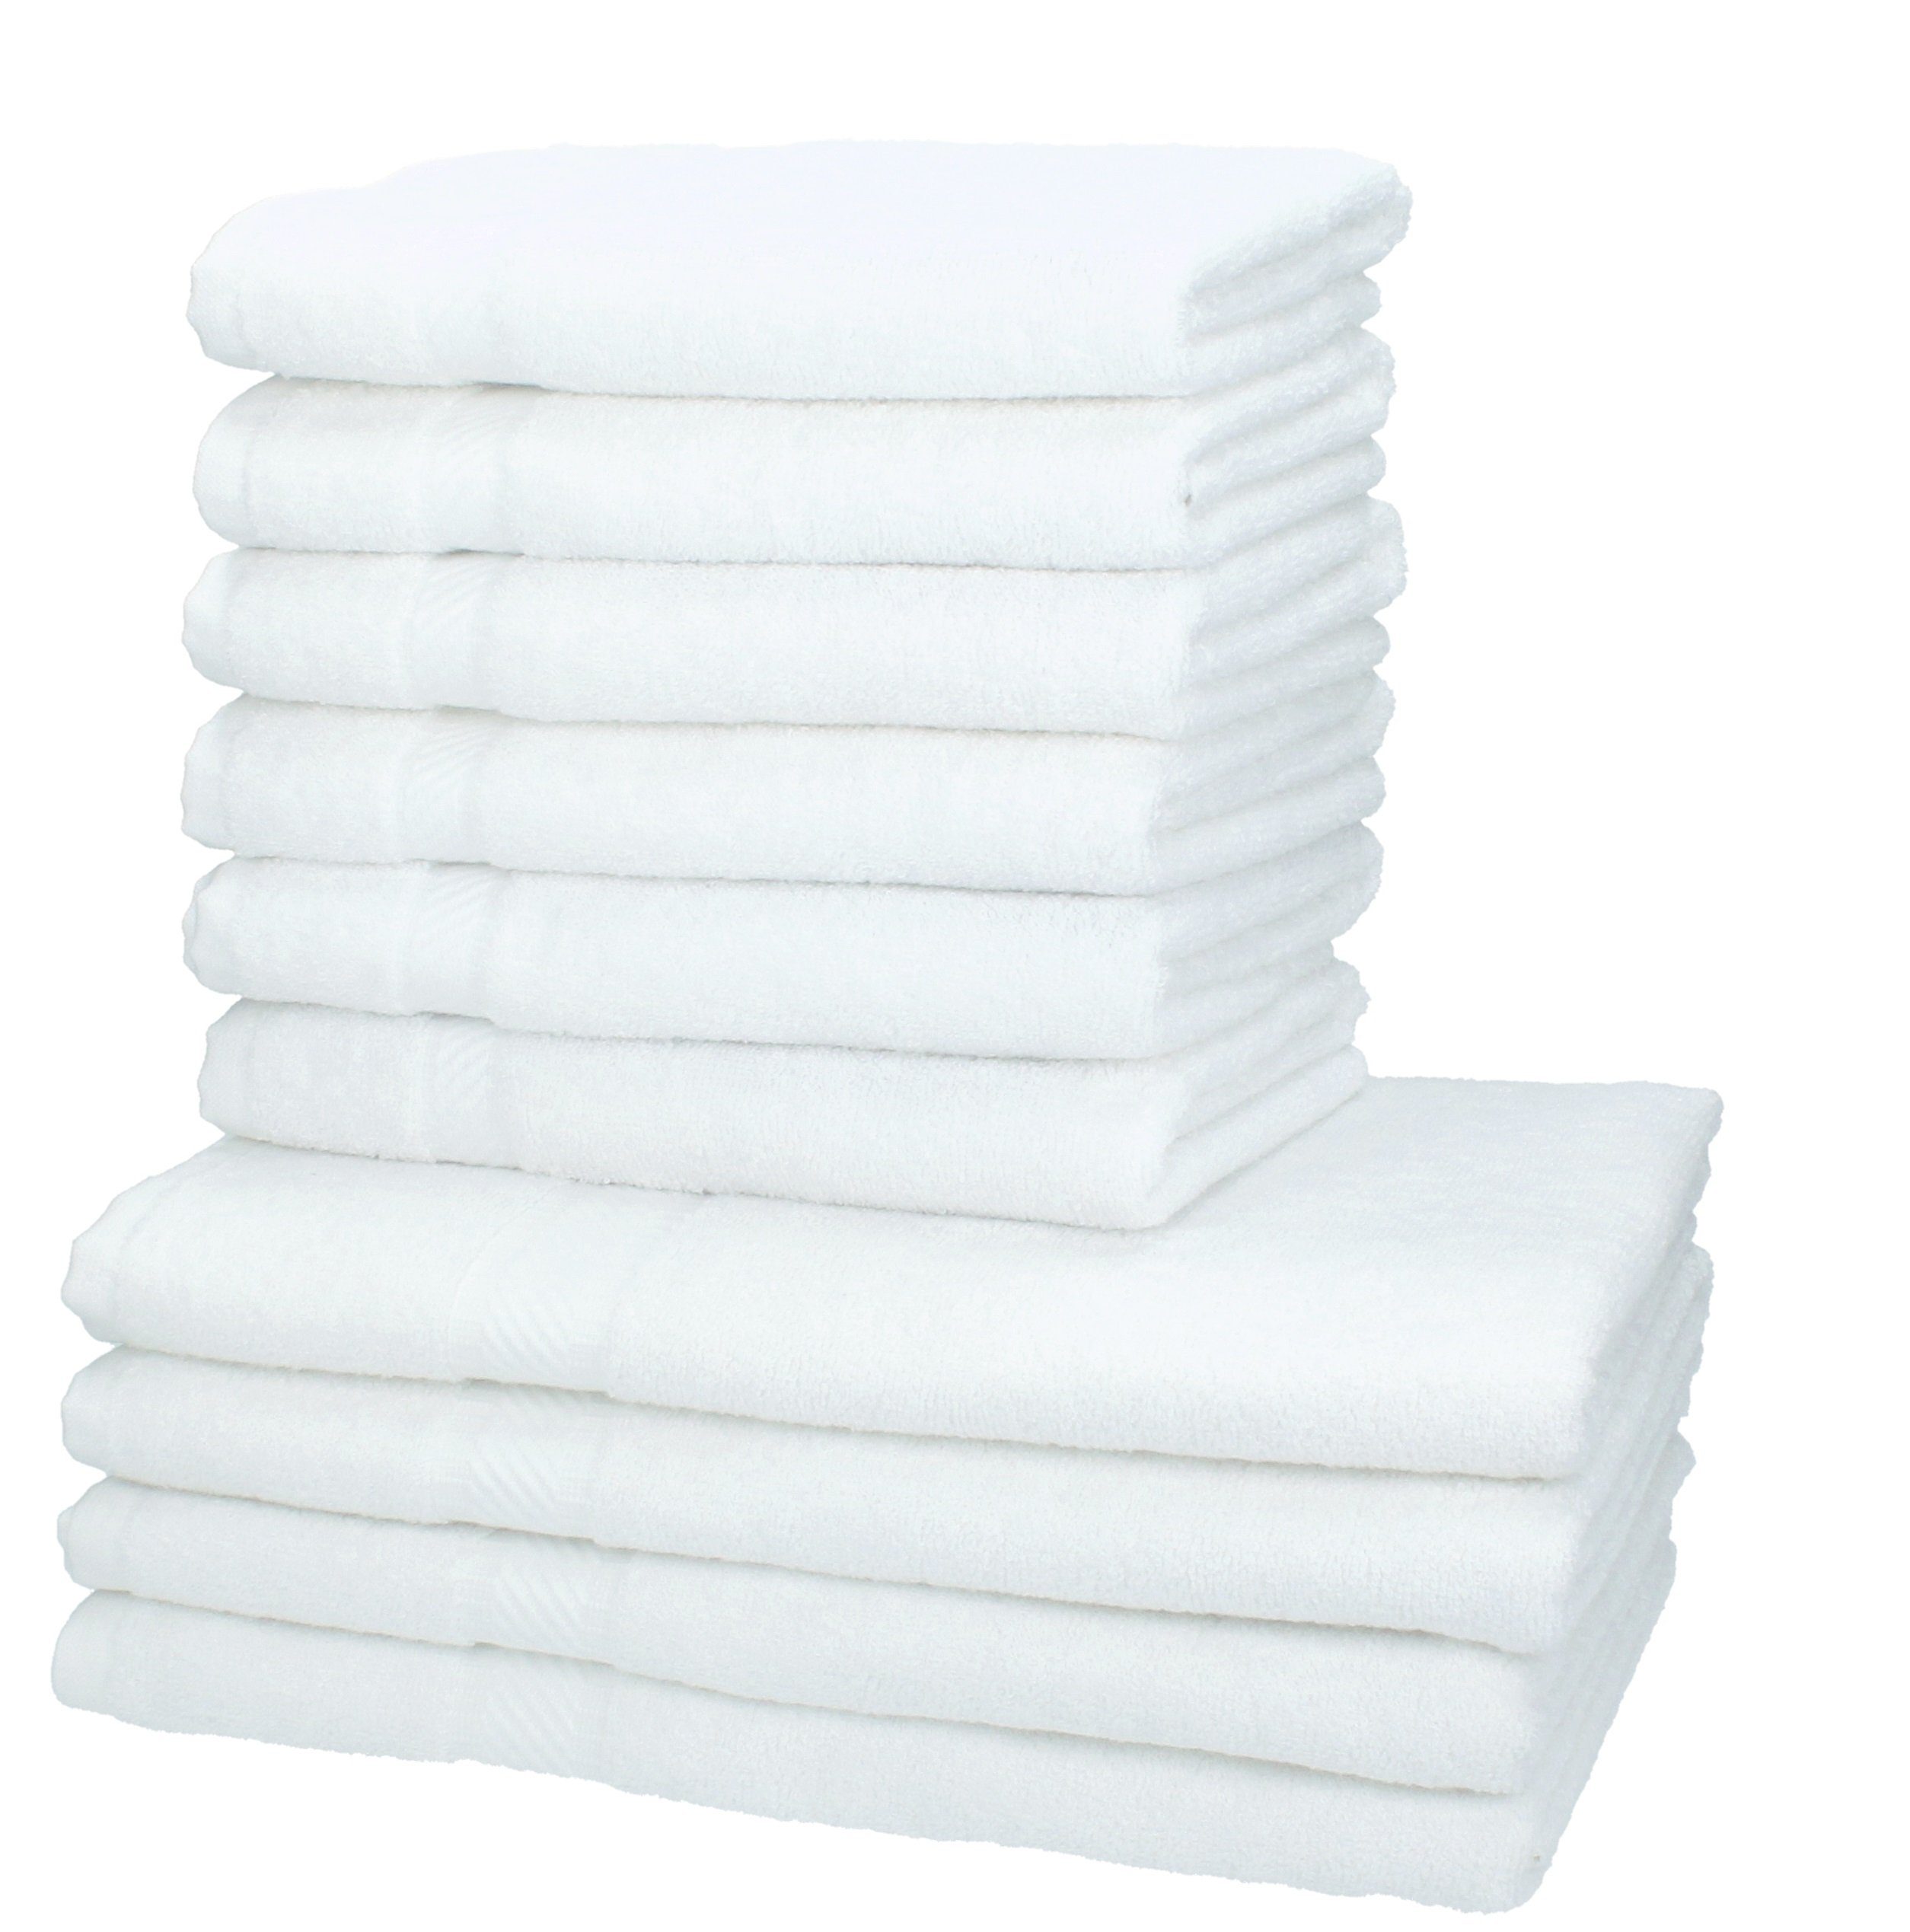 Betz Handtuch Set 10-tlg. Handtuch-Set PALERMO Farbe weiß, 100% Baumwolle